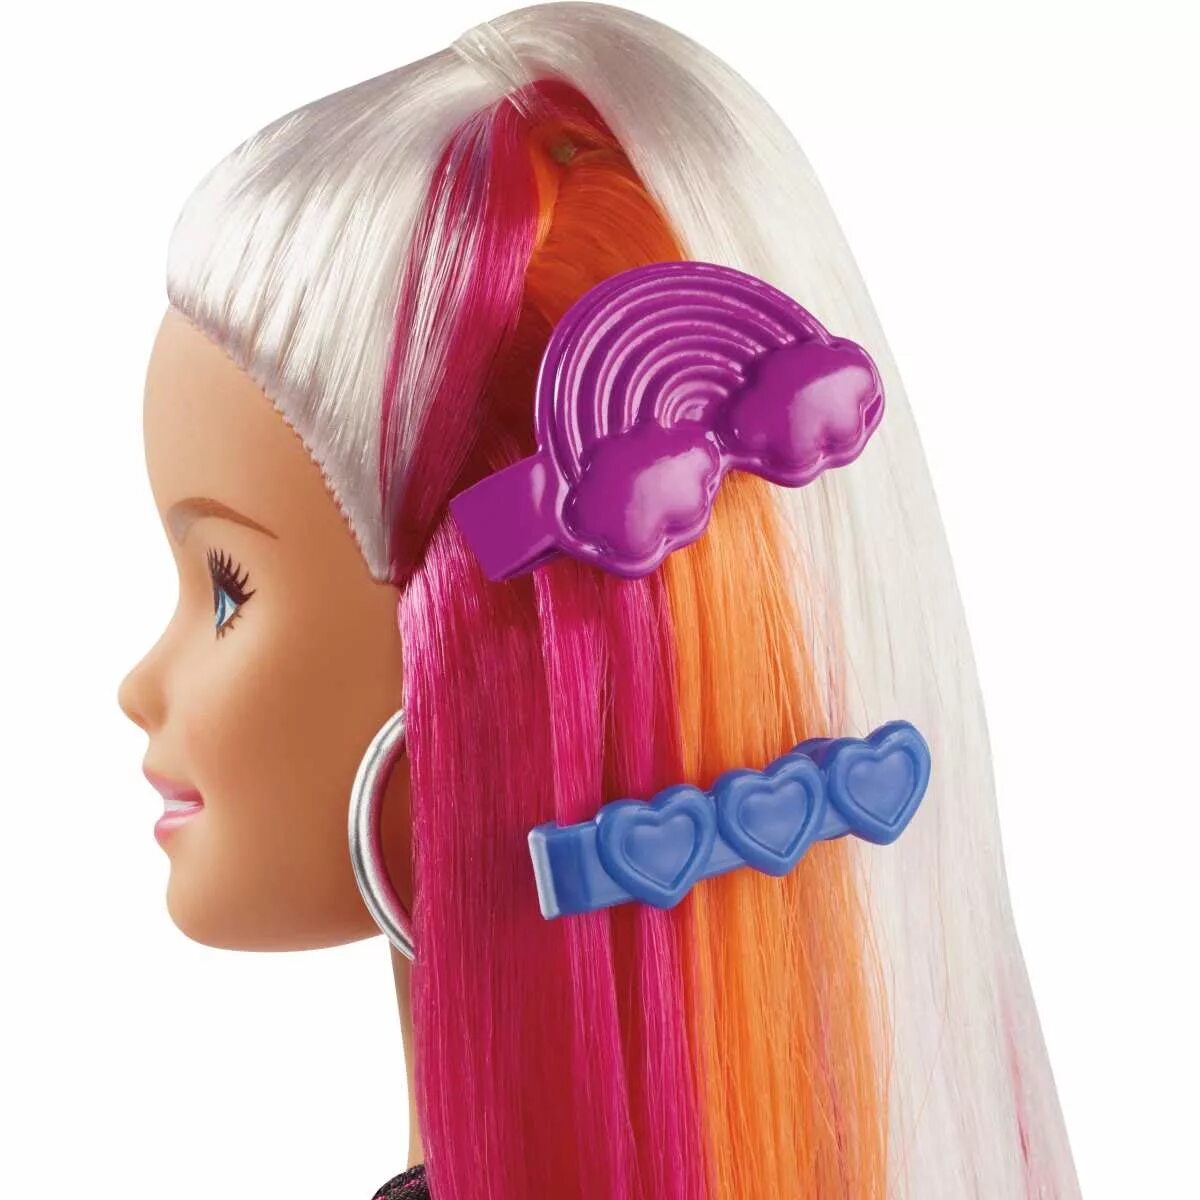 Кукла прически купить. Кукла Barbie "Barbie с радужными волосами блондинка", fxn96. Барби Rainbow Sparkle hair. Кукла Barbie с радужной мерцающей прической, fxn96. Кукла Barbie с радужными волосами блондинка fxn96.